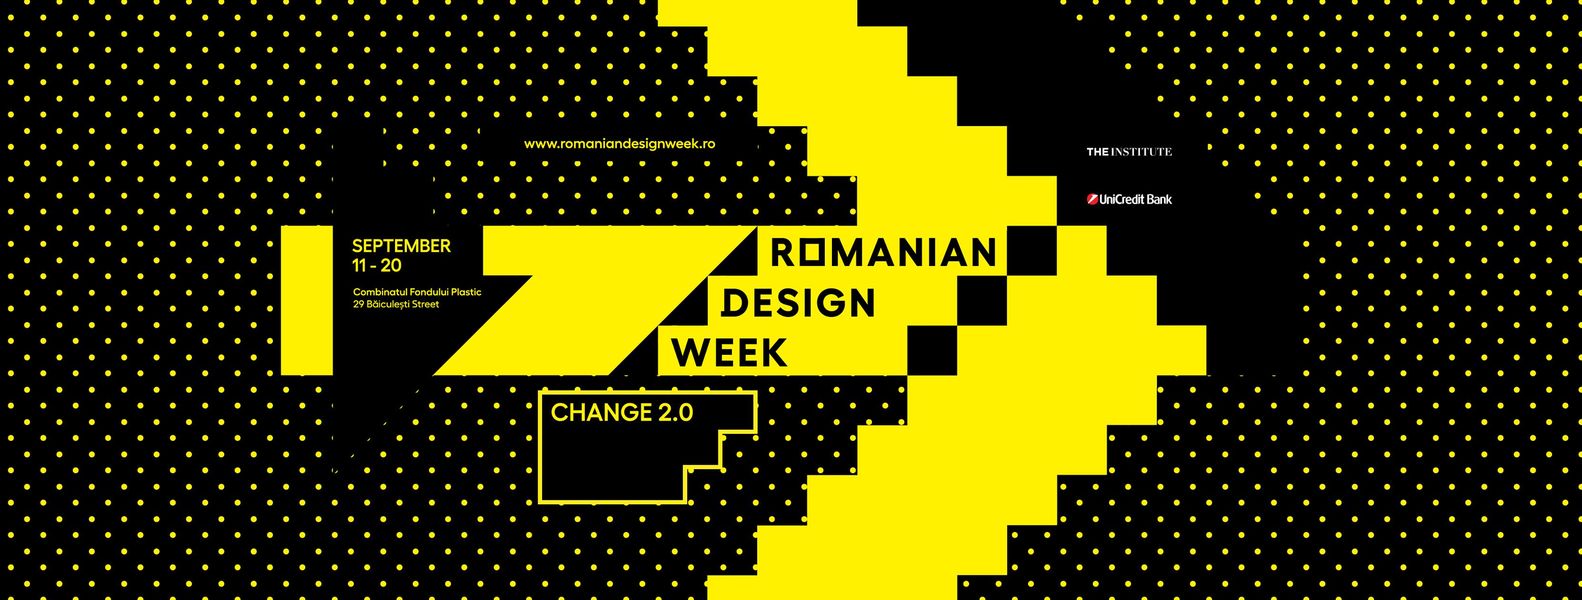 evenimente weekend 18-20 sept
Romanian design Week 